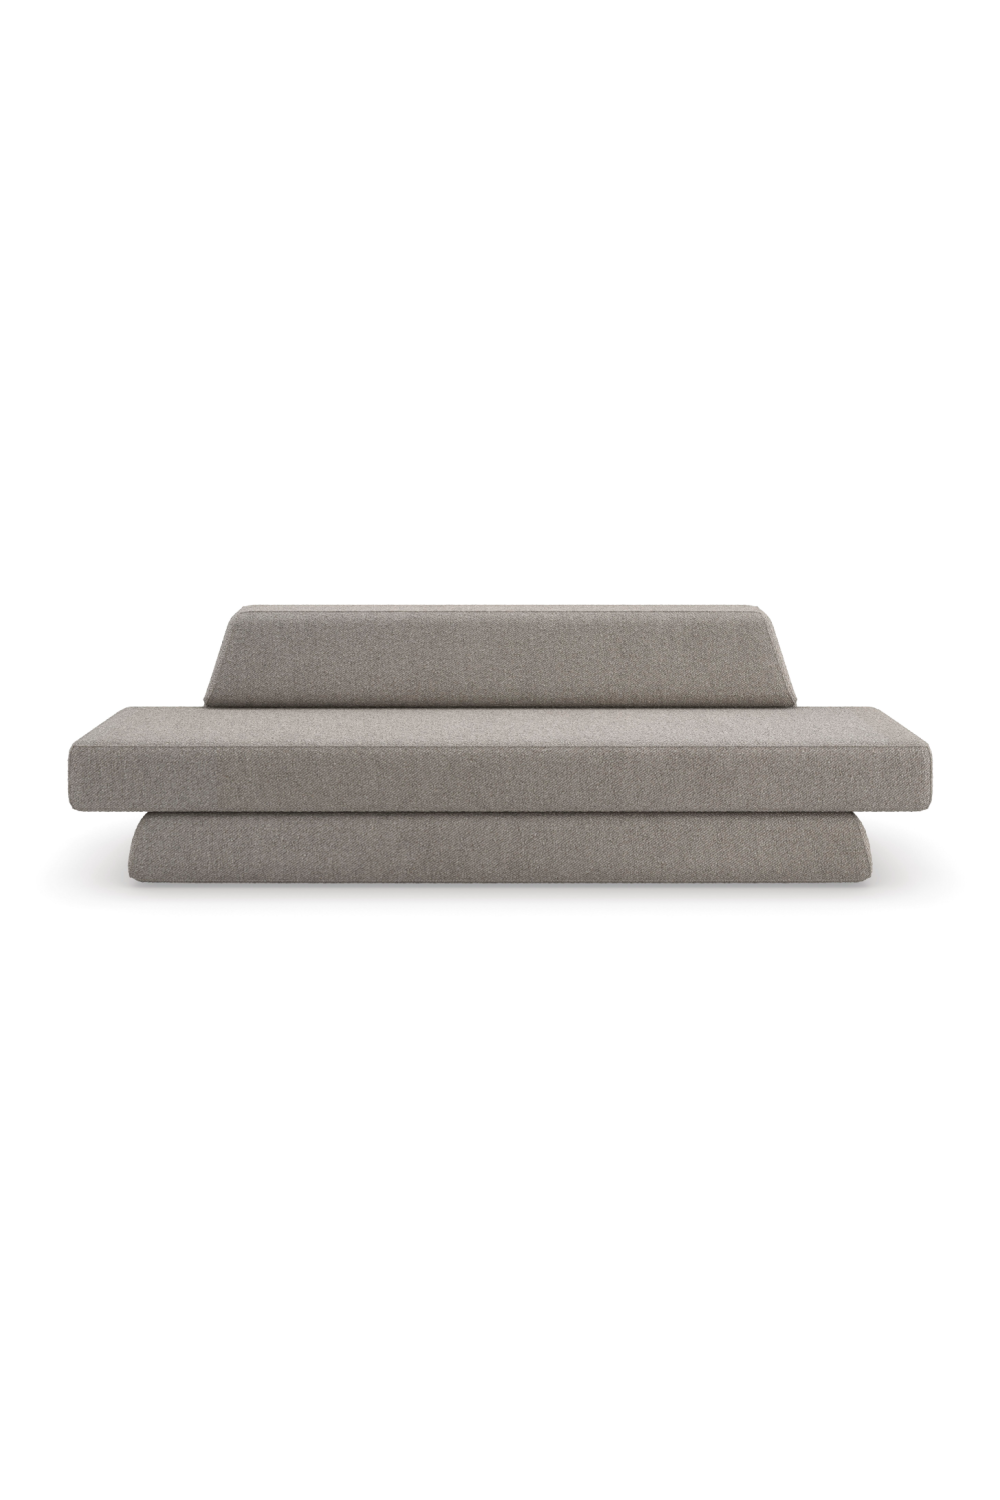 Gray Geometric Sofa | Caracole Nova | Oroa.com